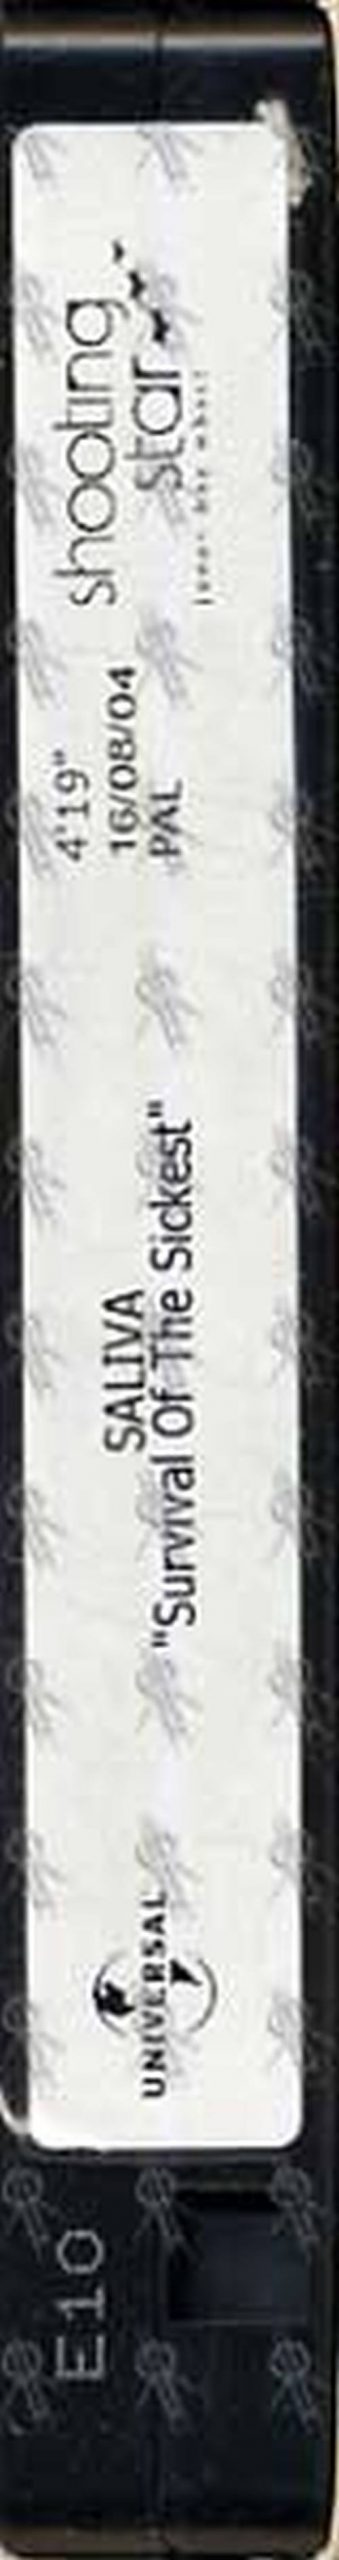 SALIVA - Survival Of The Sickest - 1